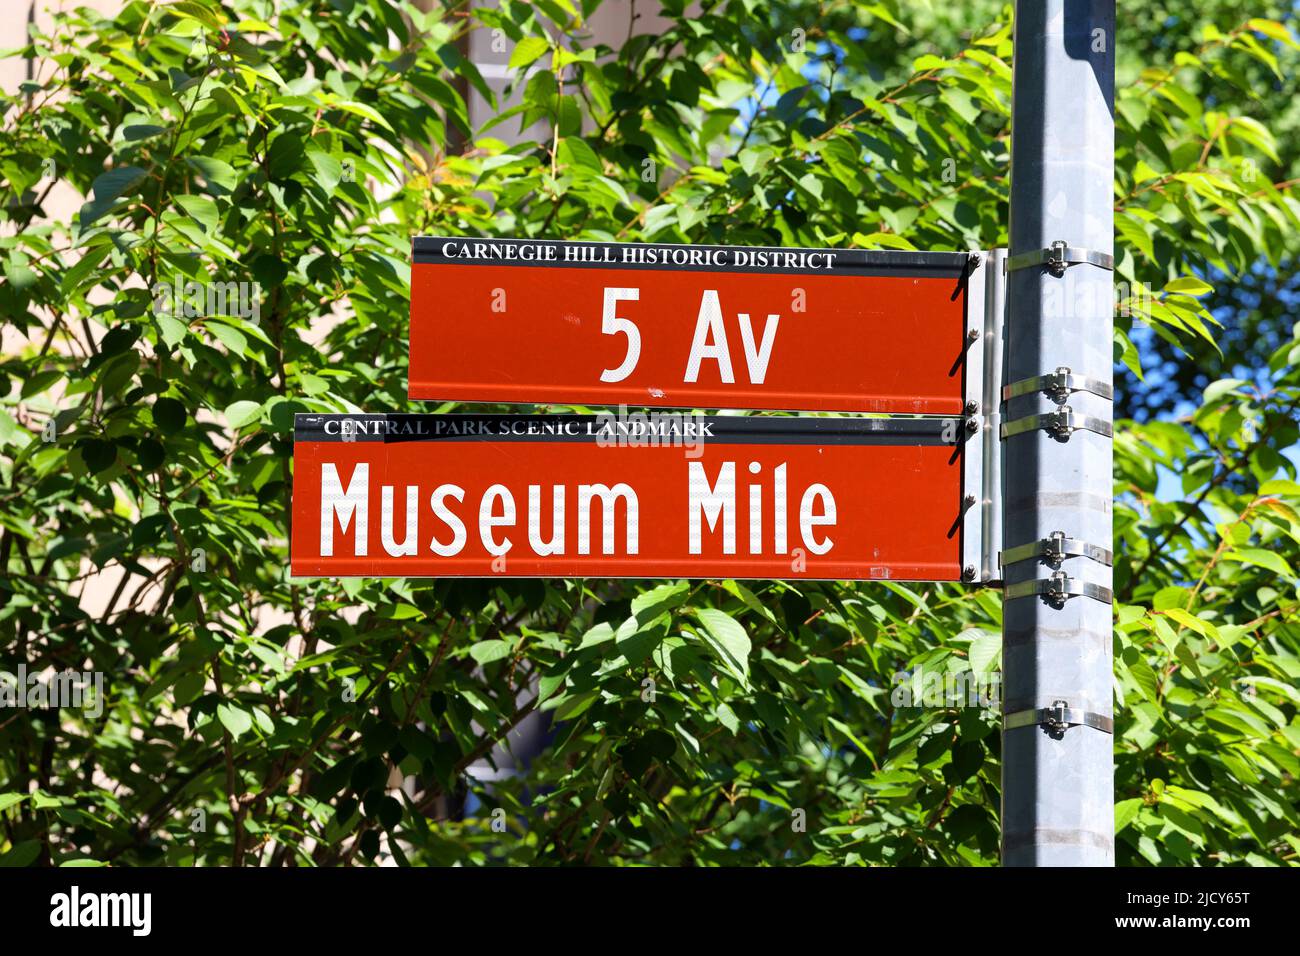 La señal de la calle Museum Mile y la señal de la calle Fifth Avenue en el barrio Carnegie Hill en Manhattan, Nueva York. Foto de stock